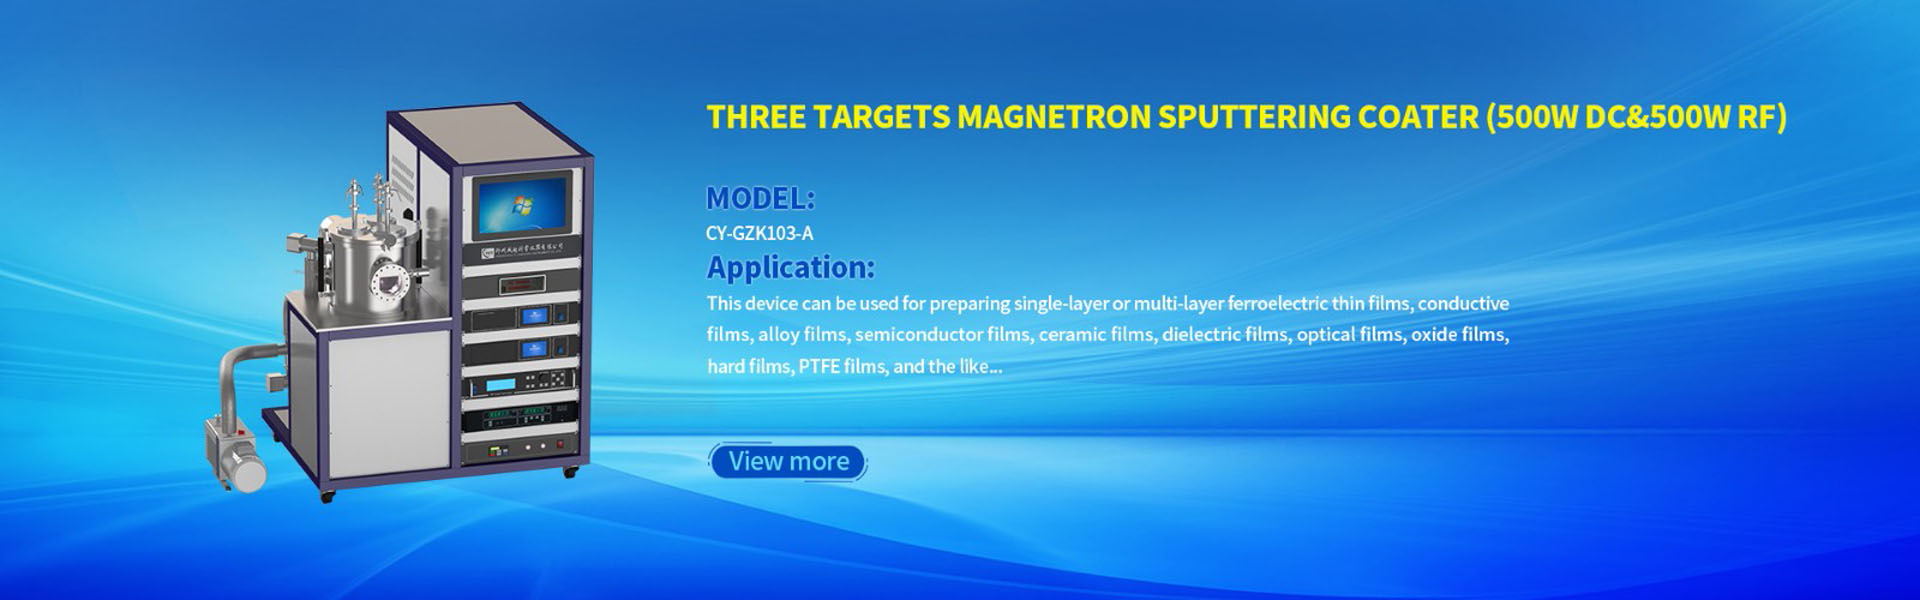 Magnetron Sputter coating